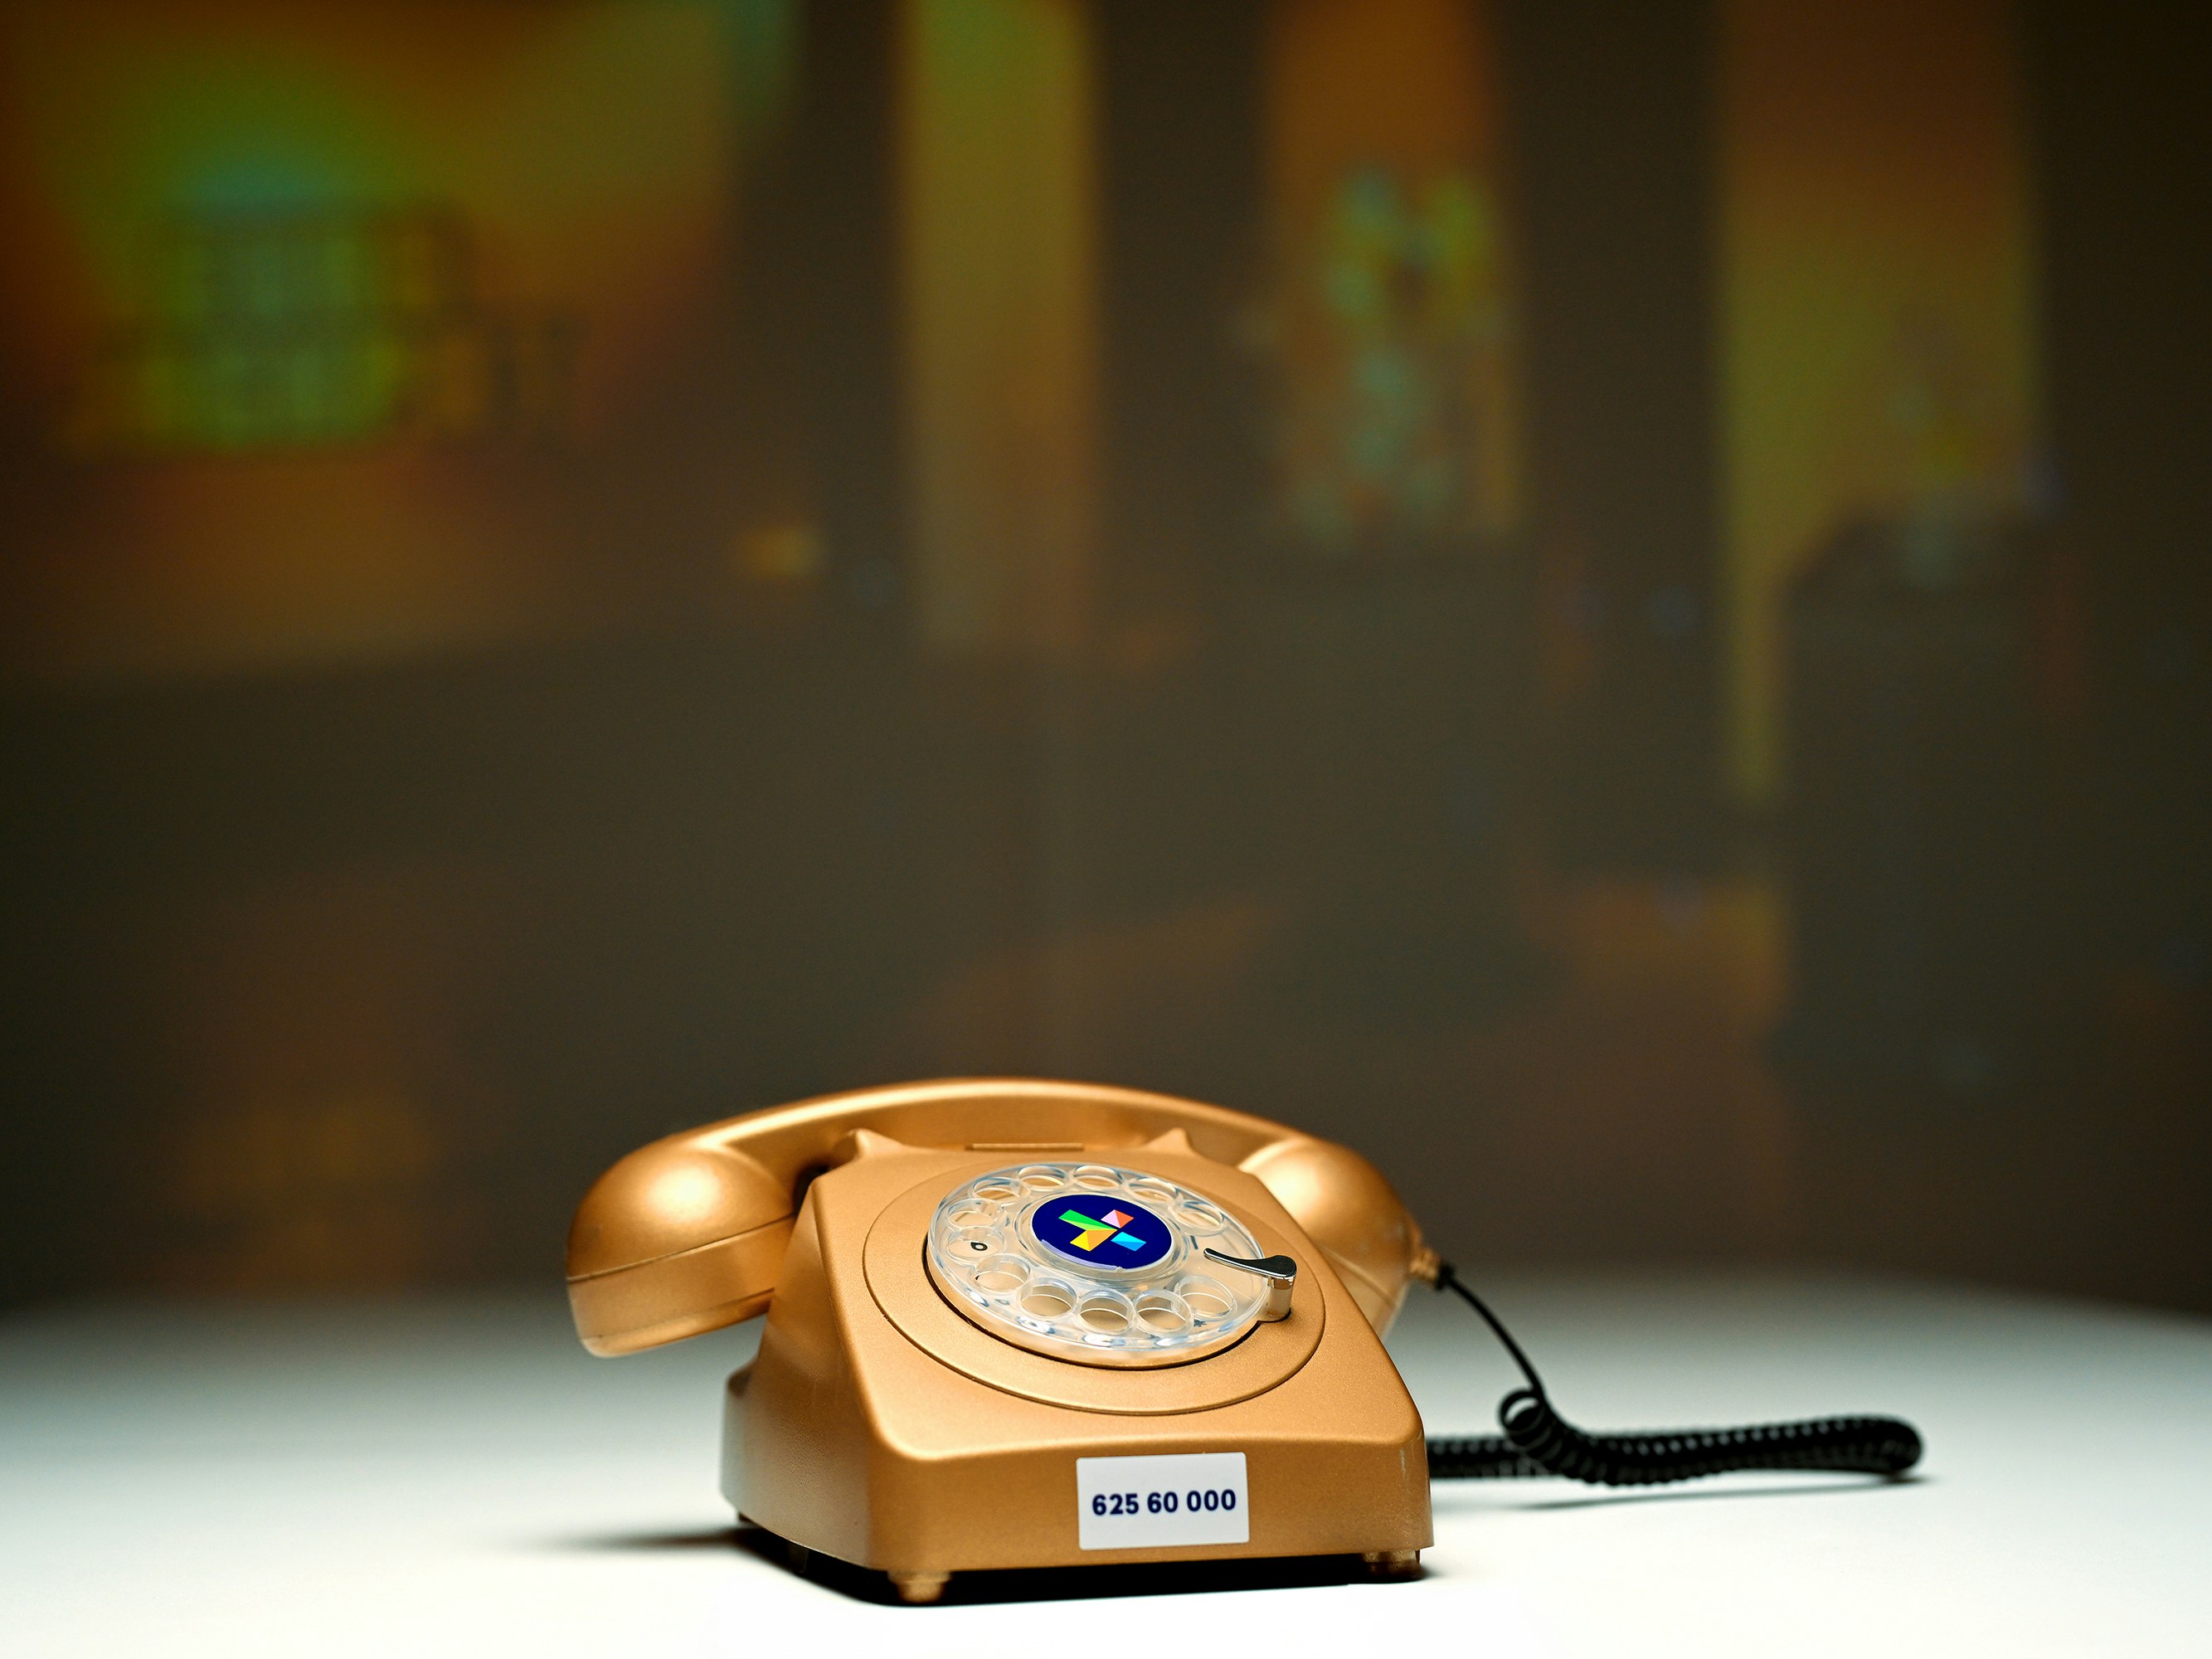 Bilde av gammeldags telefon i gullfarge. Står på et bord. Bak et lerret med Eurojackpot-logo.